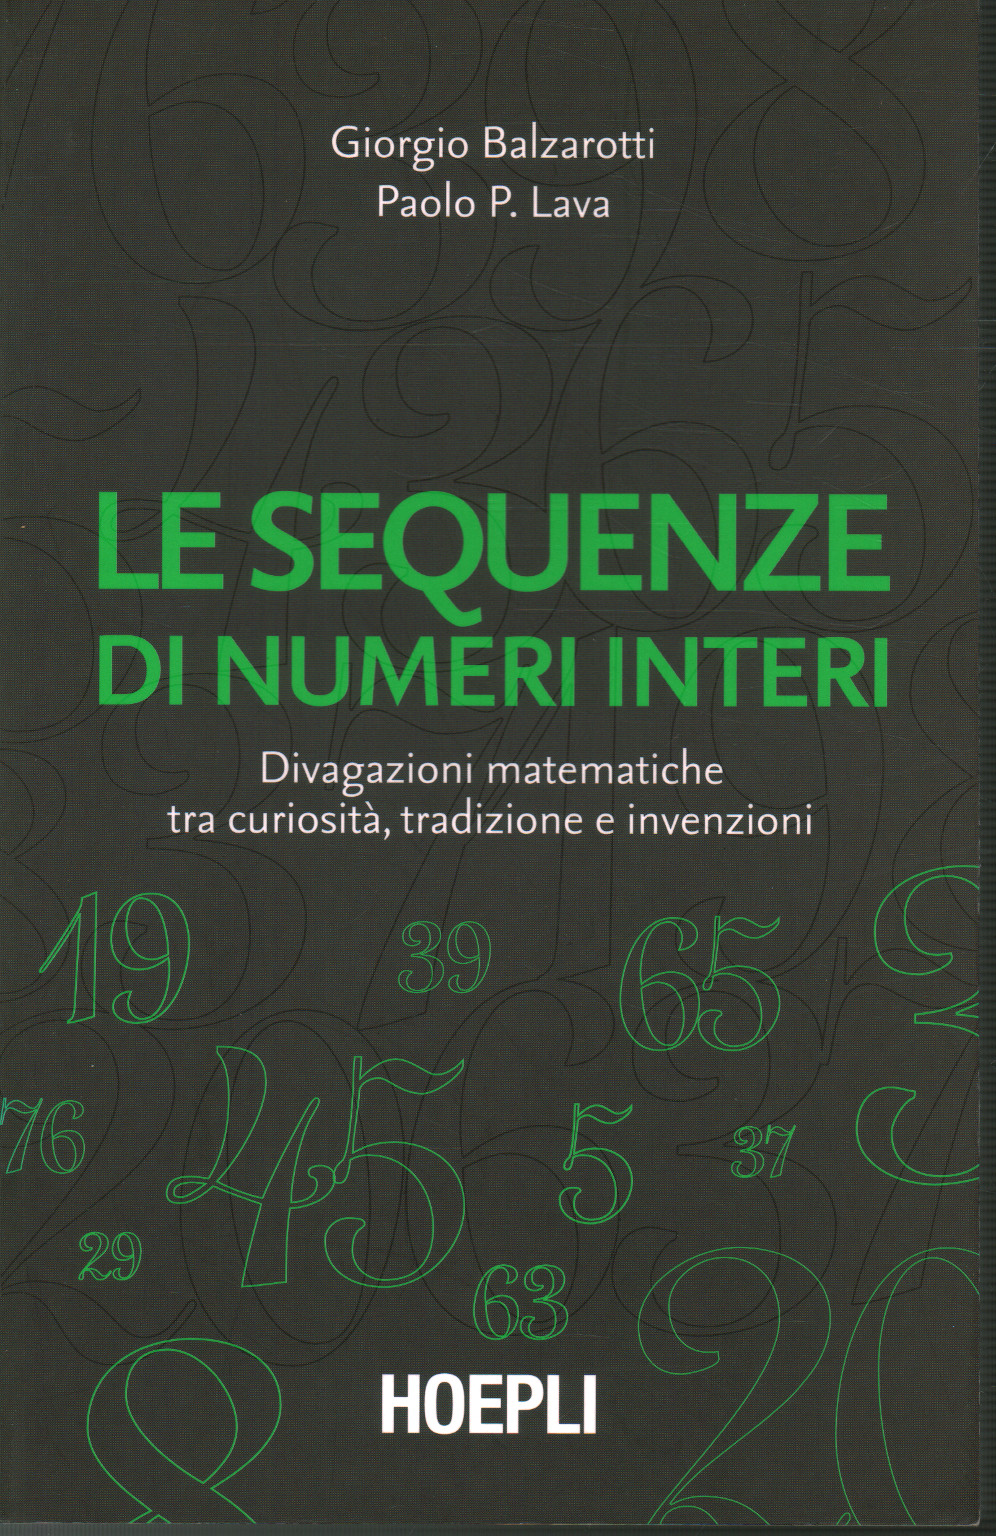 Le sequenze dei numeri interi, s.a.